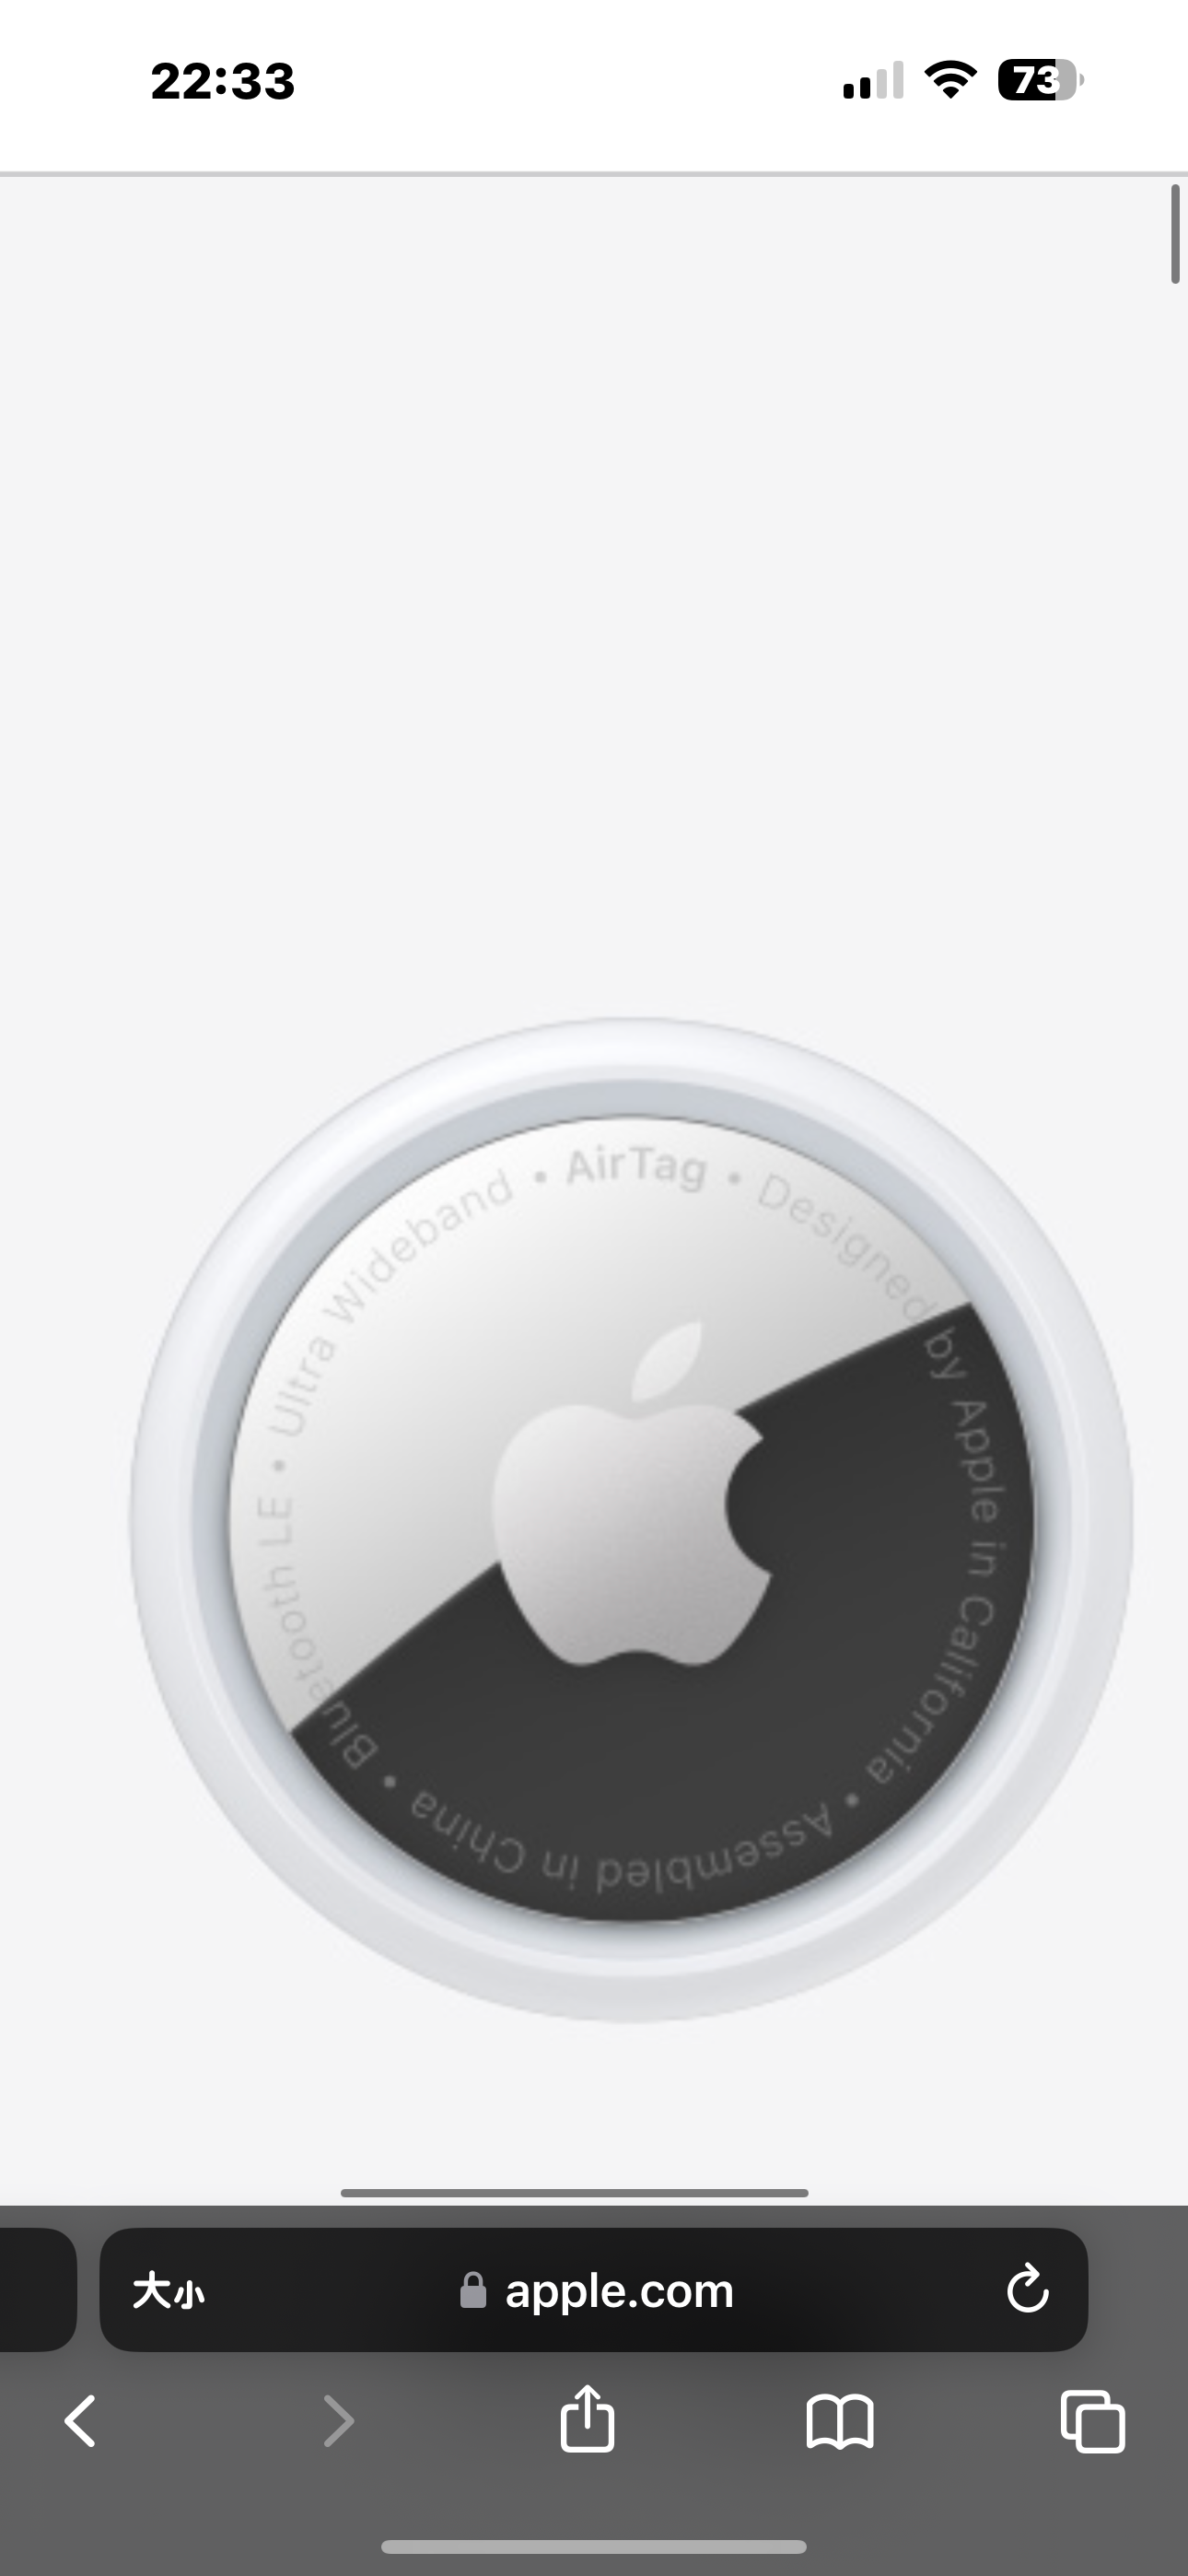 Apple Air tag